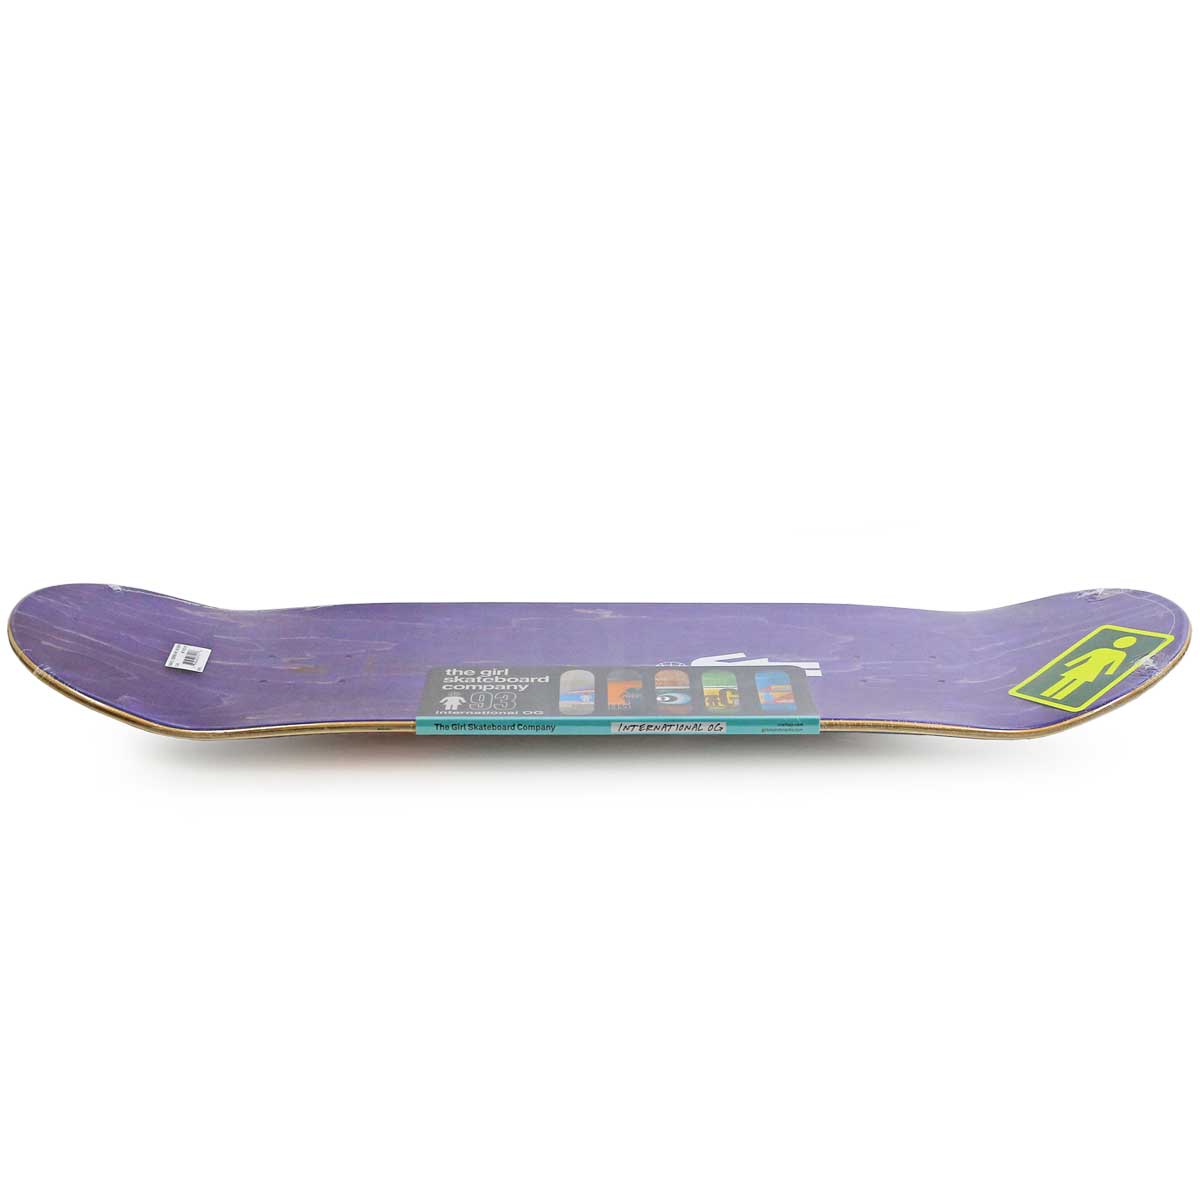 ガール 8.0インチ スケボー デッキ Girl Skateboards Pro Geering 